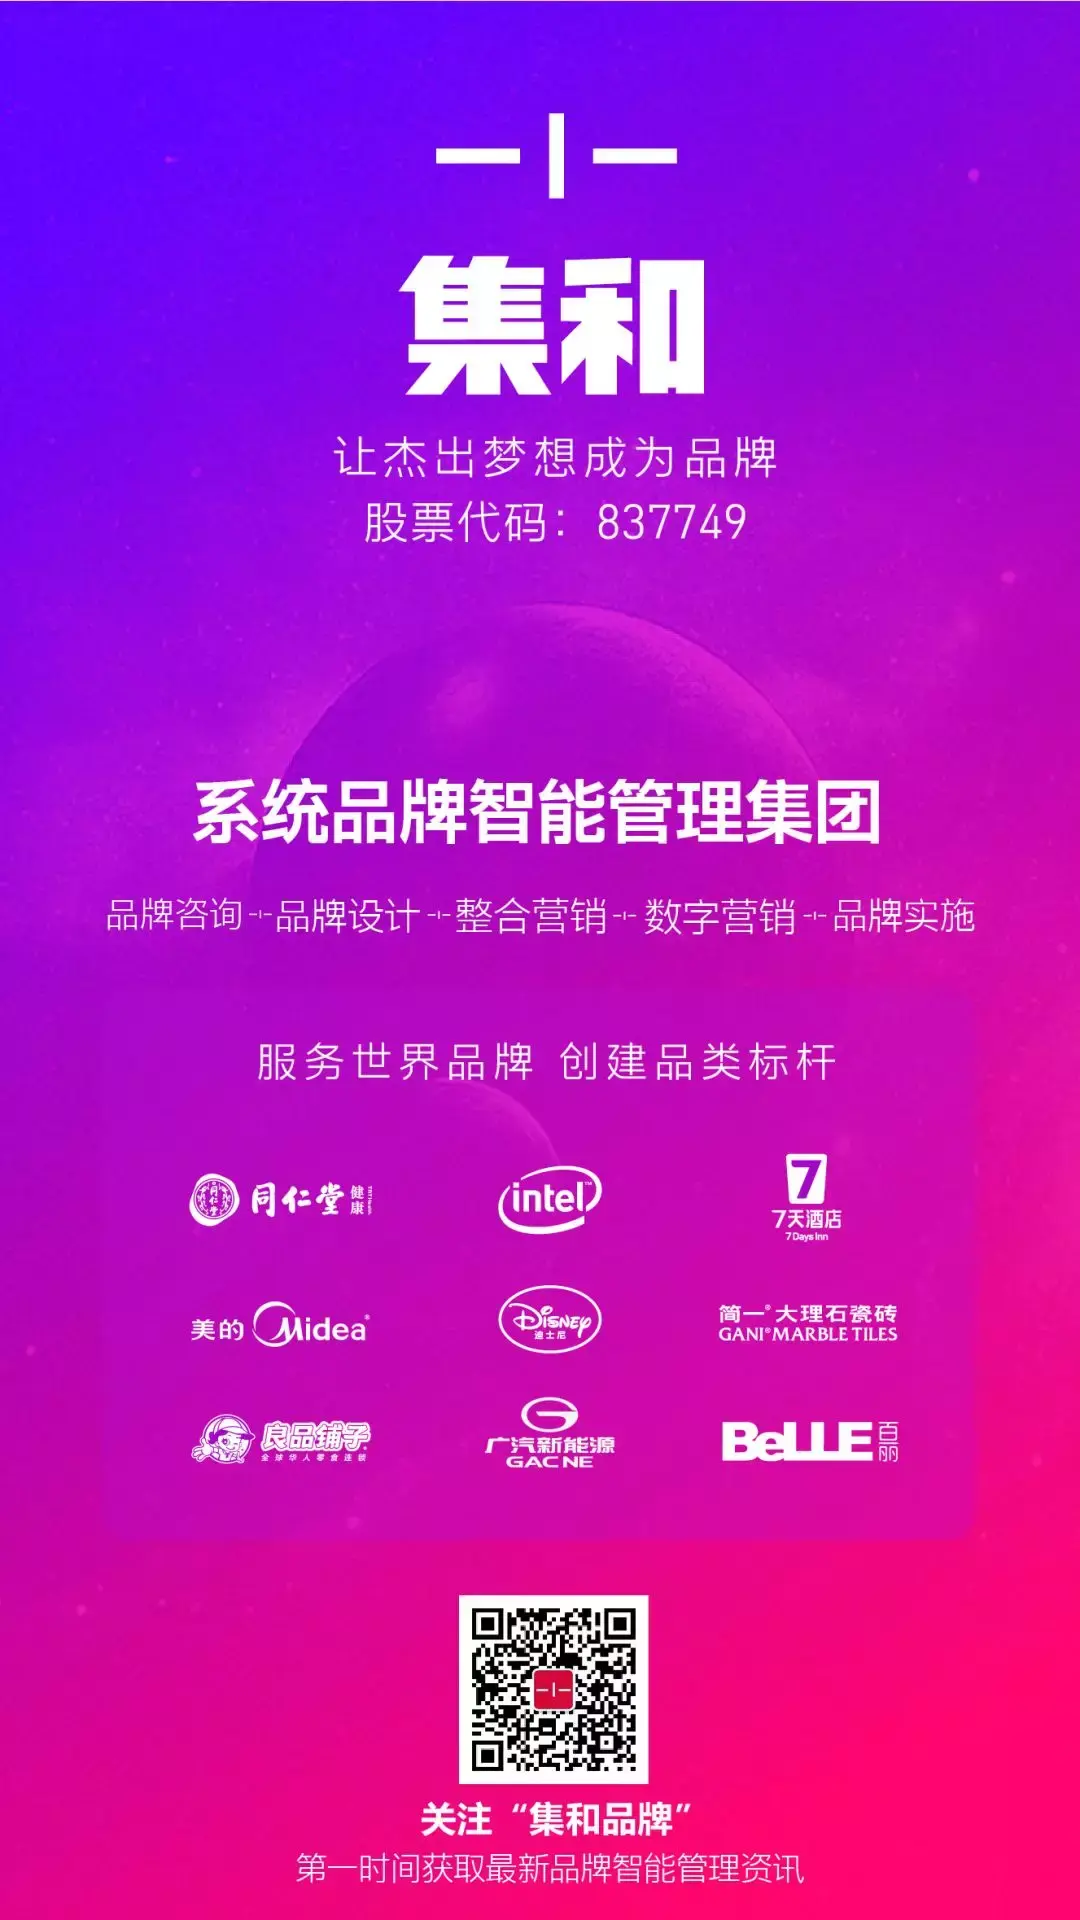 上海 DDR 电机供应商：技术创新与团队协作的力量  第6张